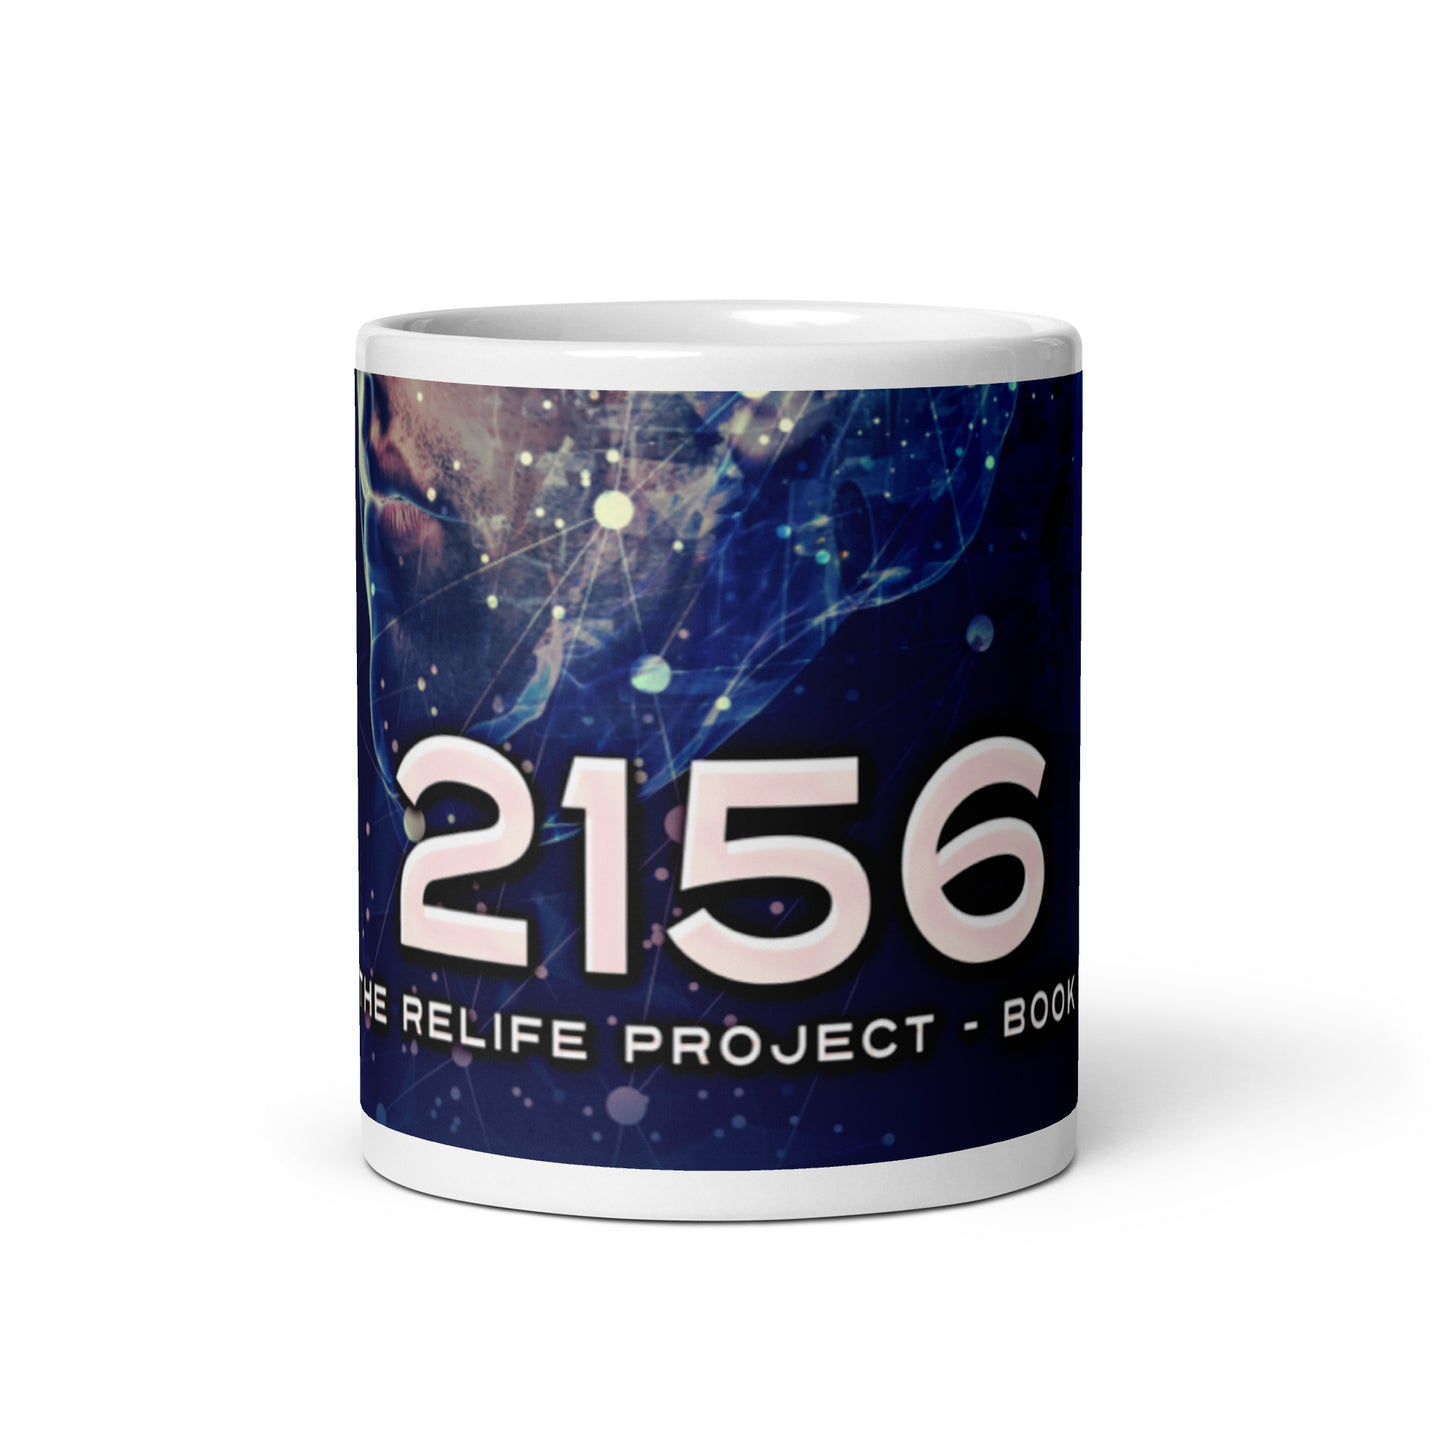 2156 - White Coffee Mug